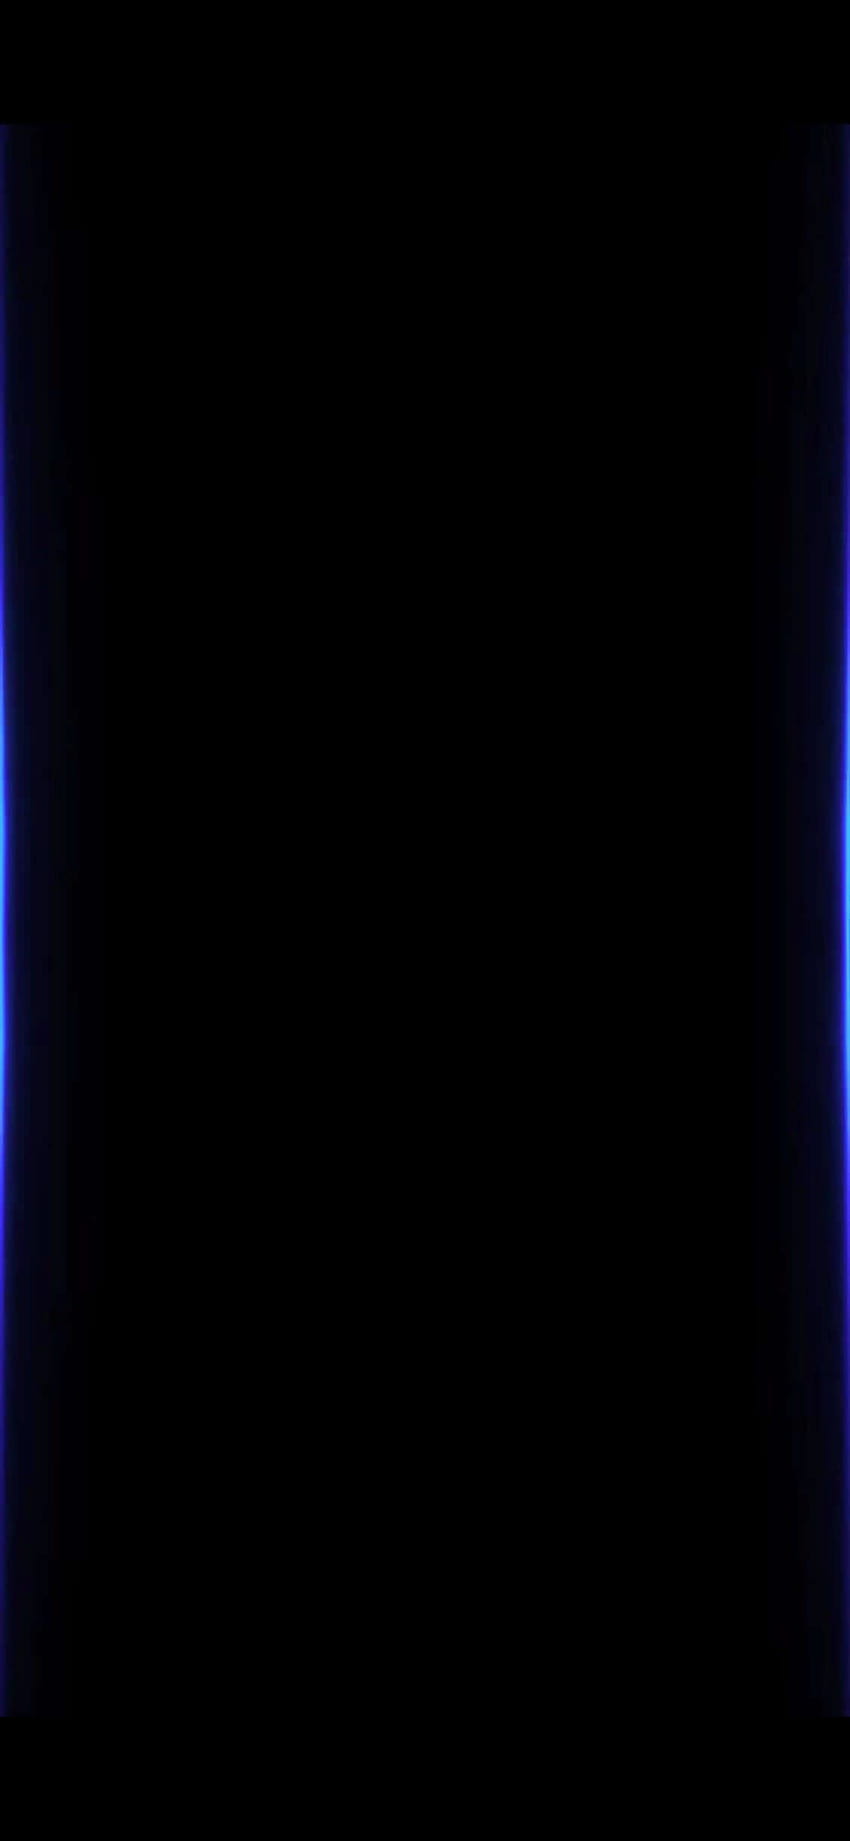 Daftar Iphone X Edge Lighting wallpaper ponsel HD